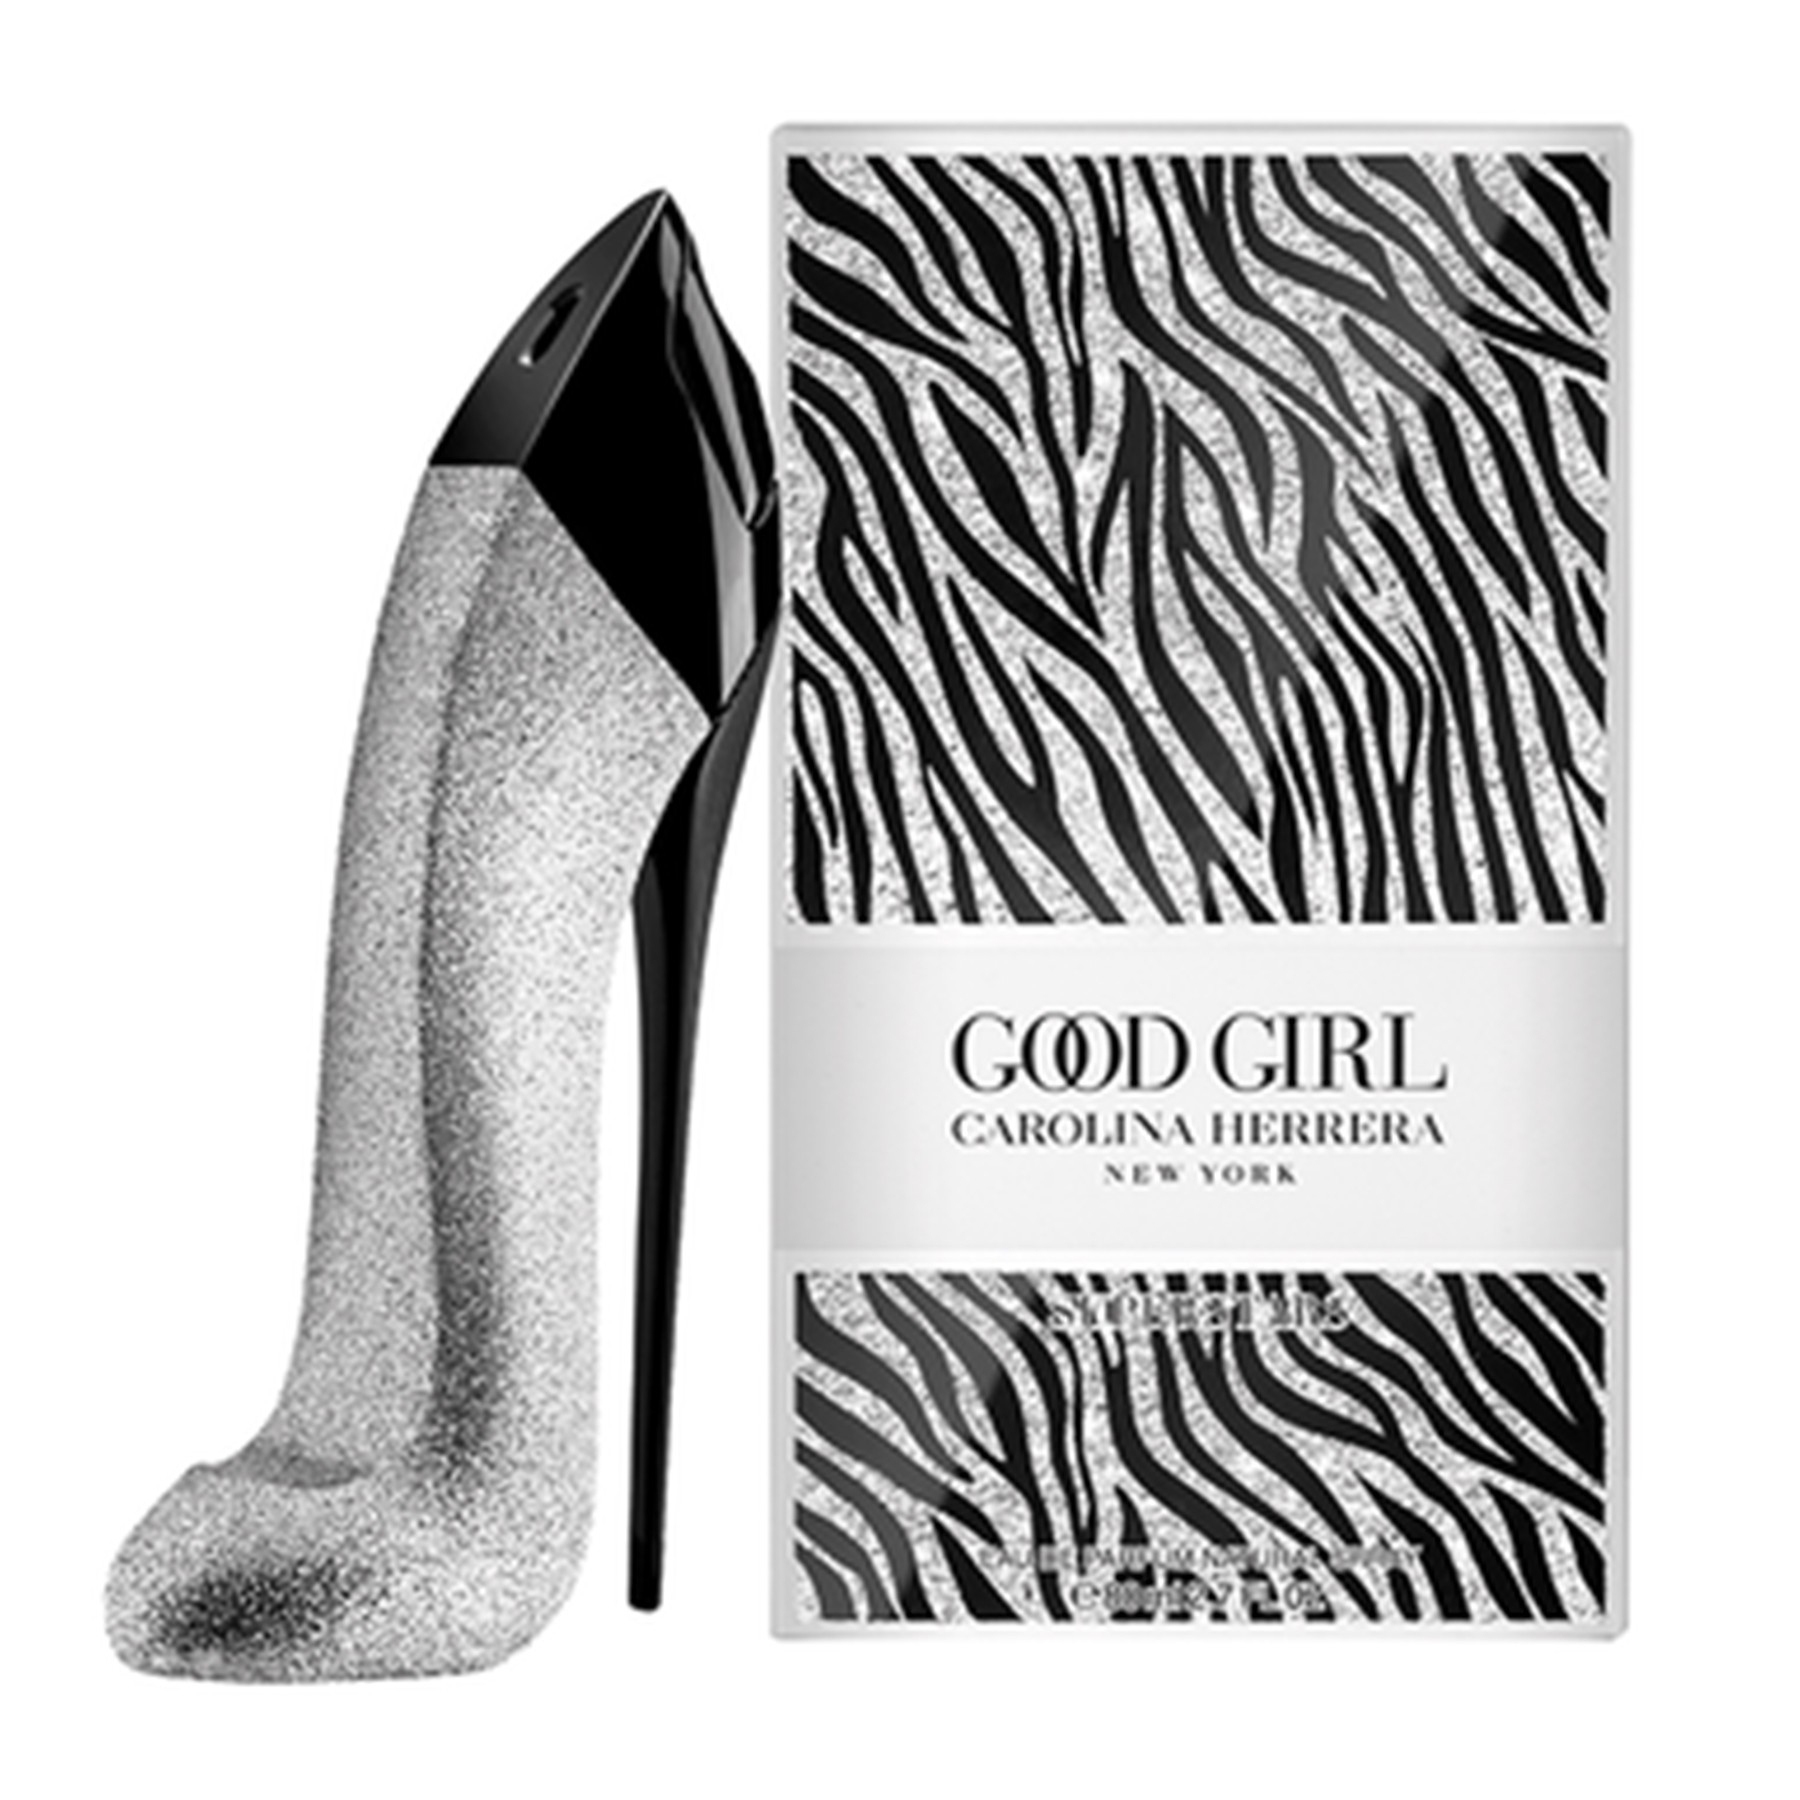 Perfume Good Girl Glitter Feminino, Carolina Herrera